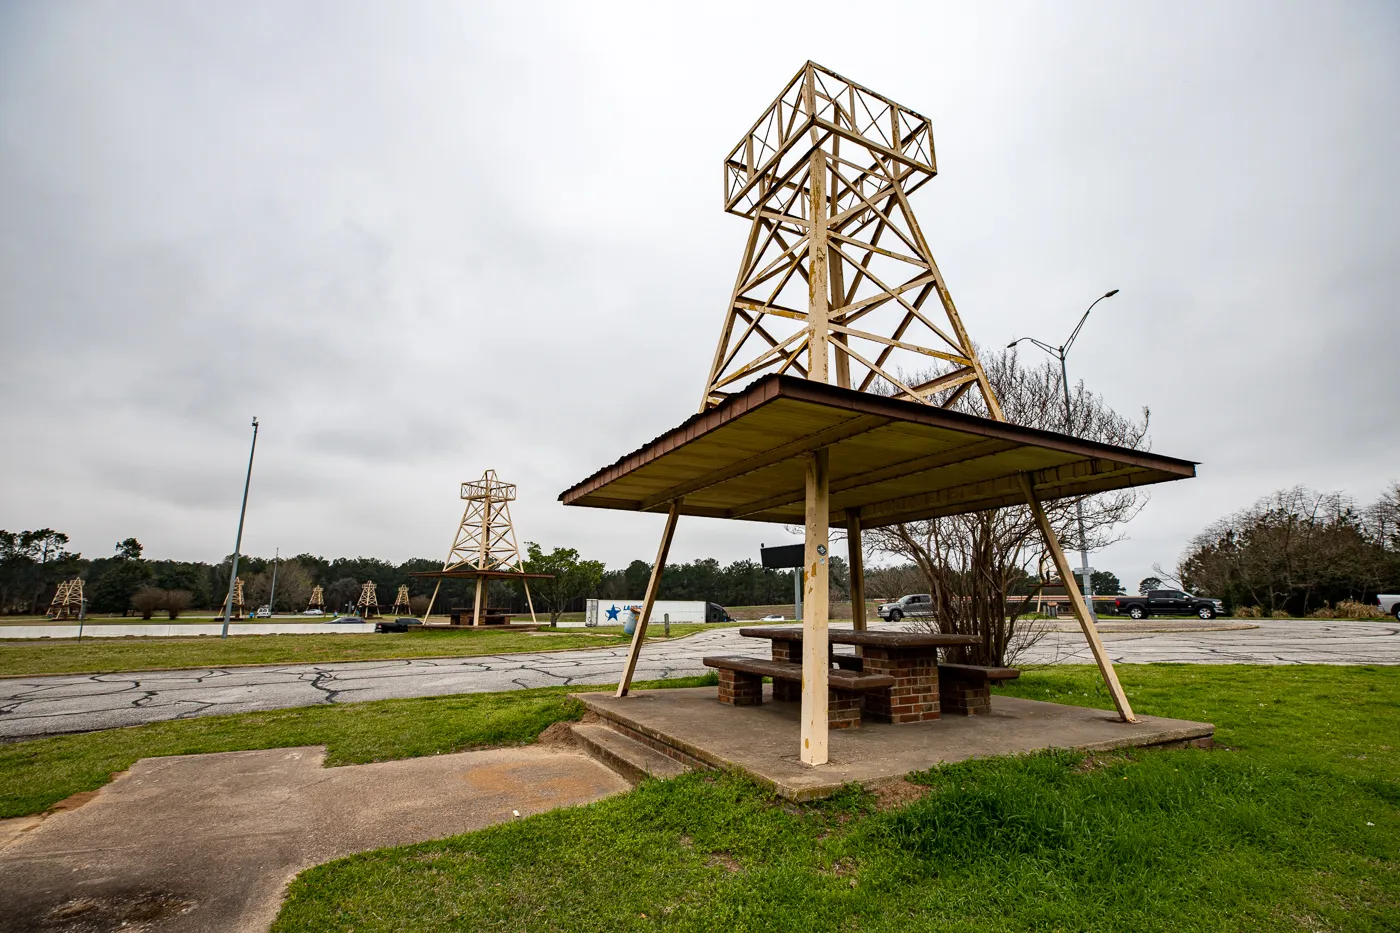 Oil Derrick Picnic Area in Winona, Texas